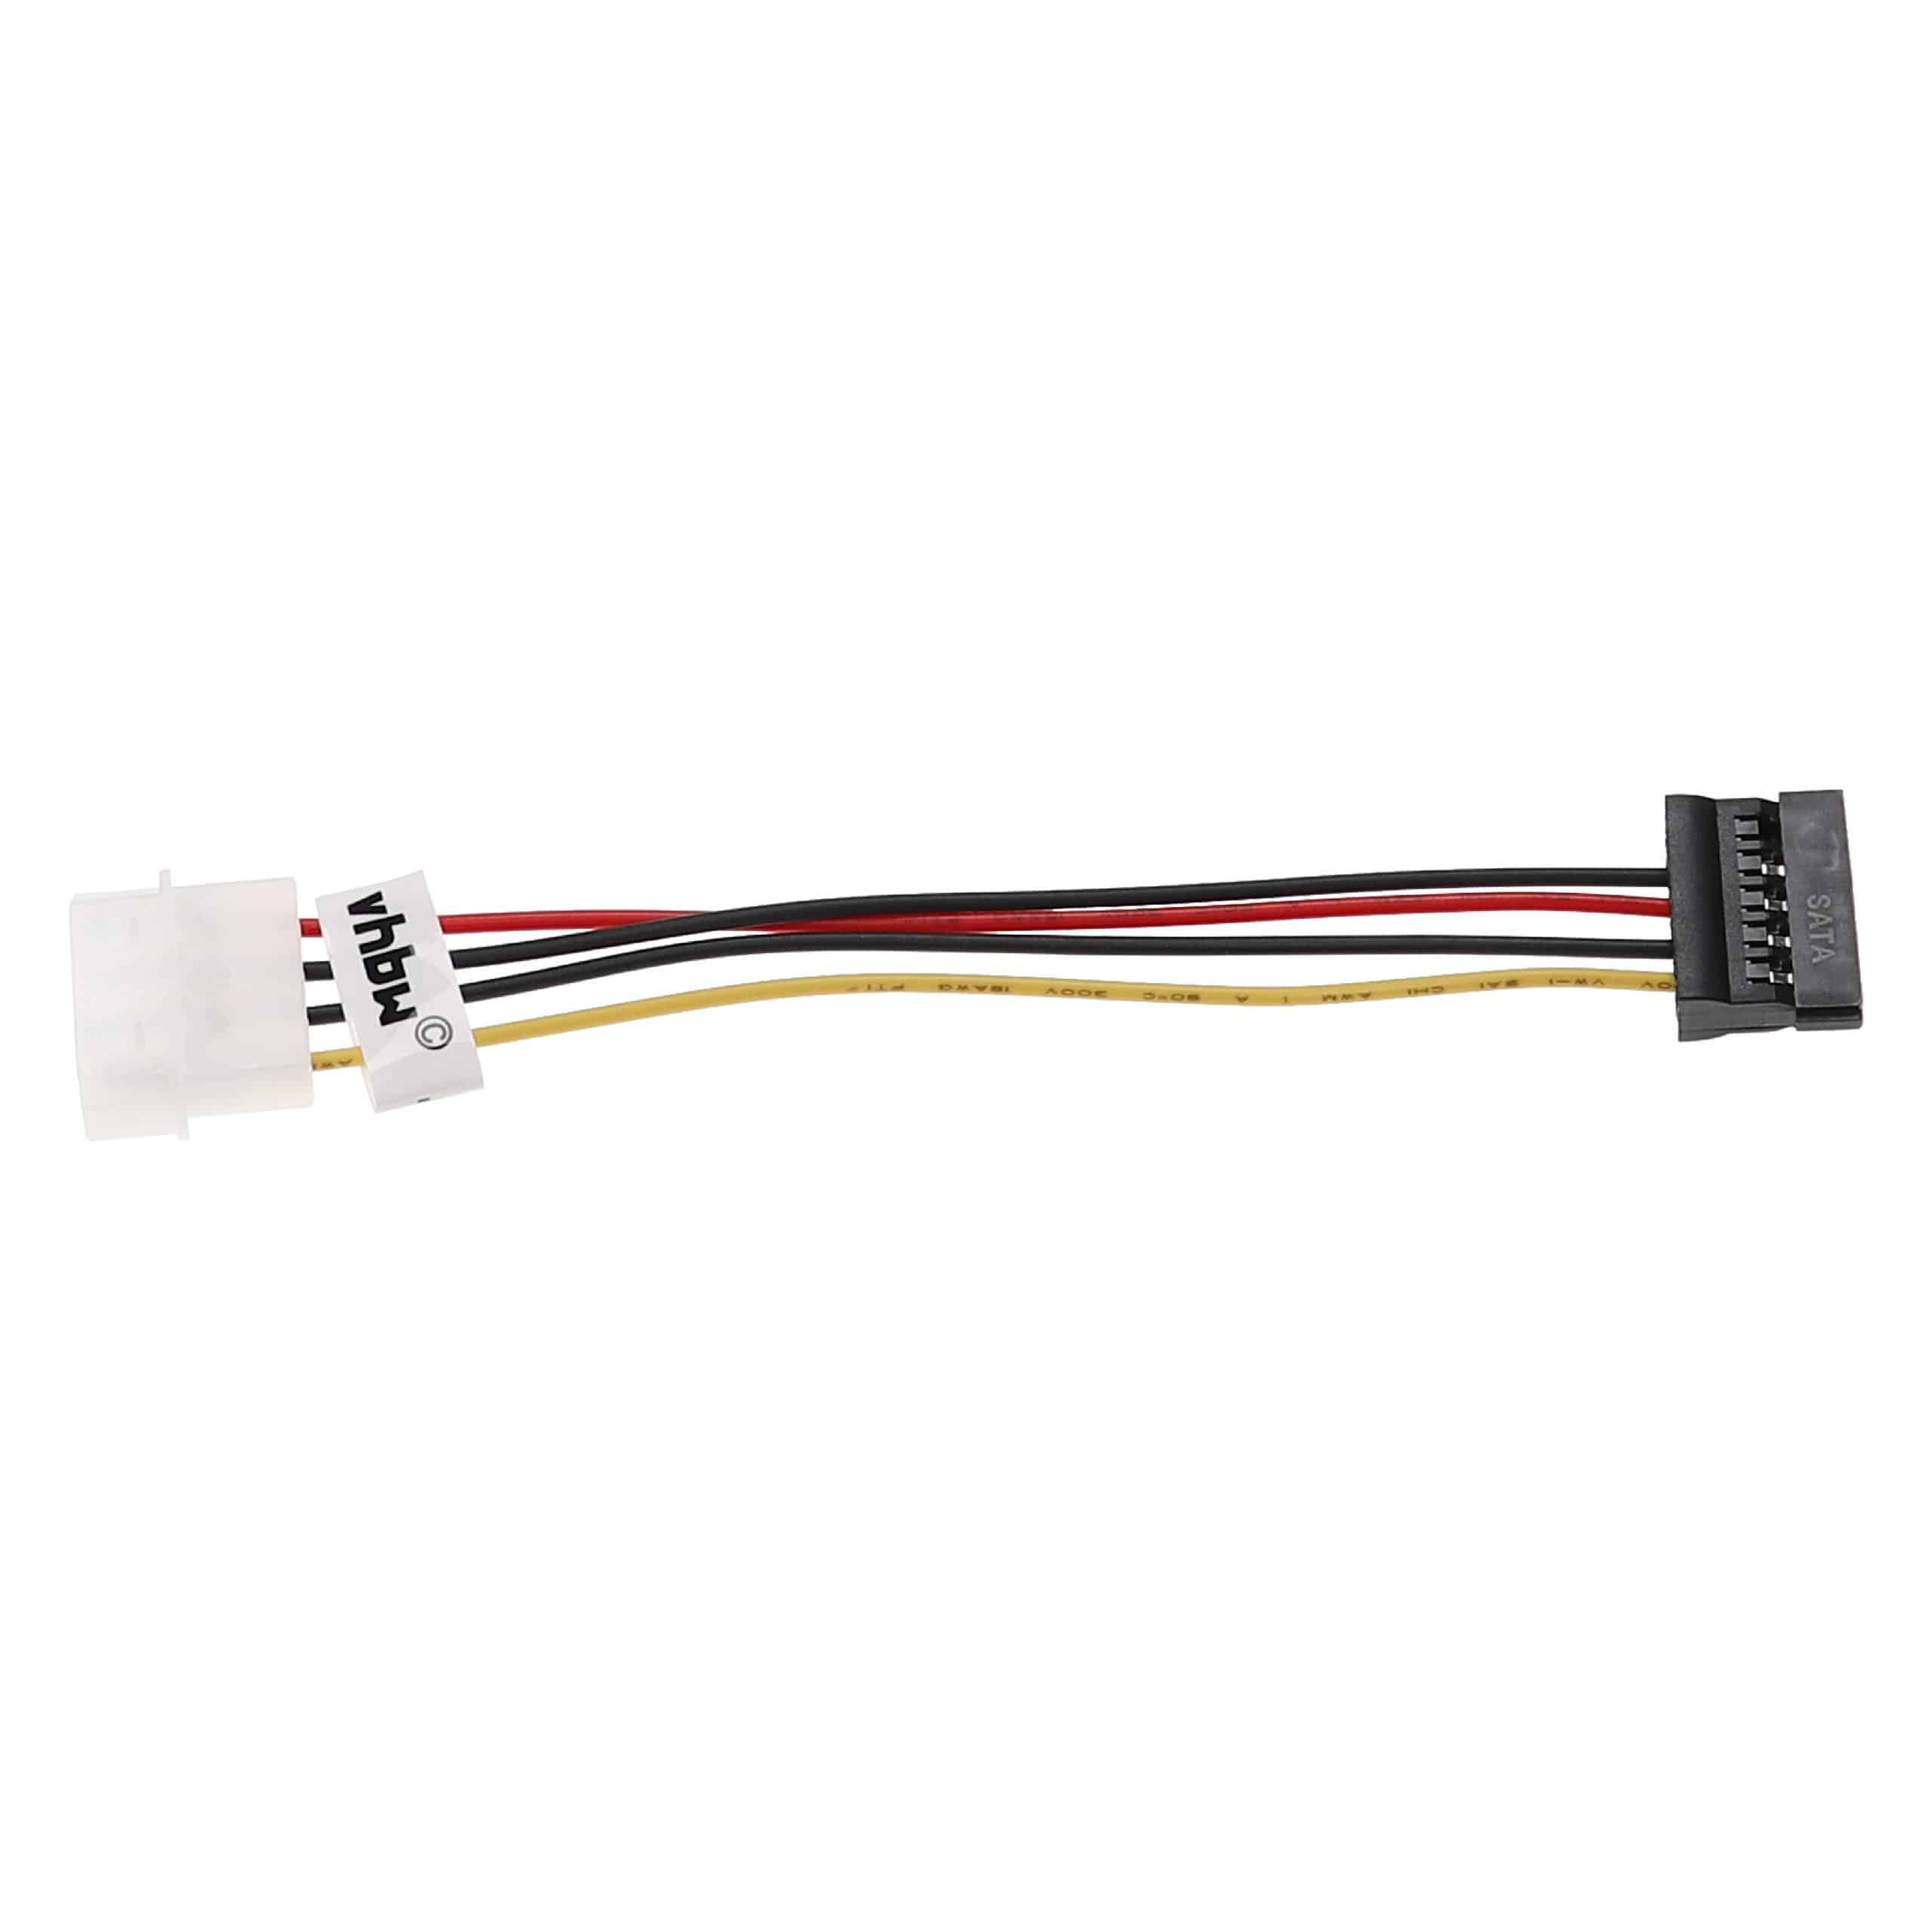 Cable de corriente a clavija (h) SATA compatible para discos duros - Cable de corriente IDE , 15 cm